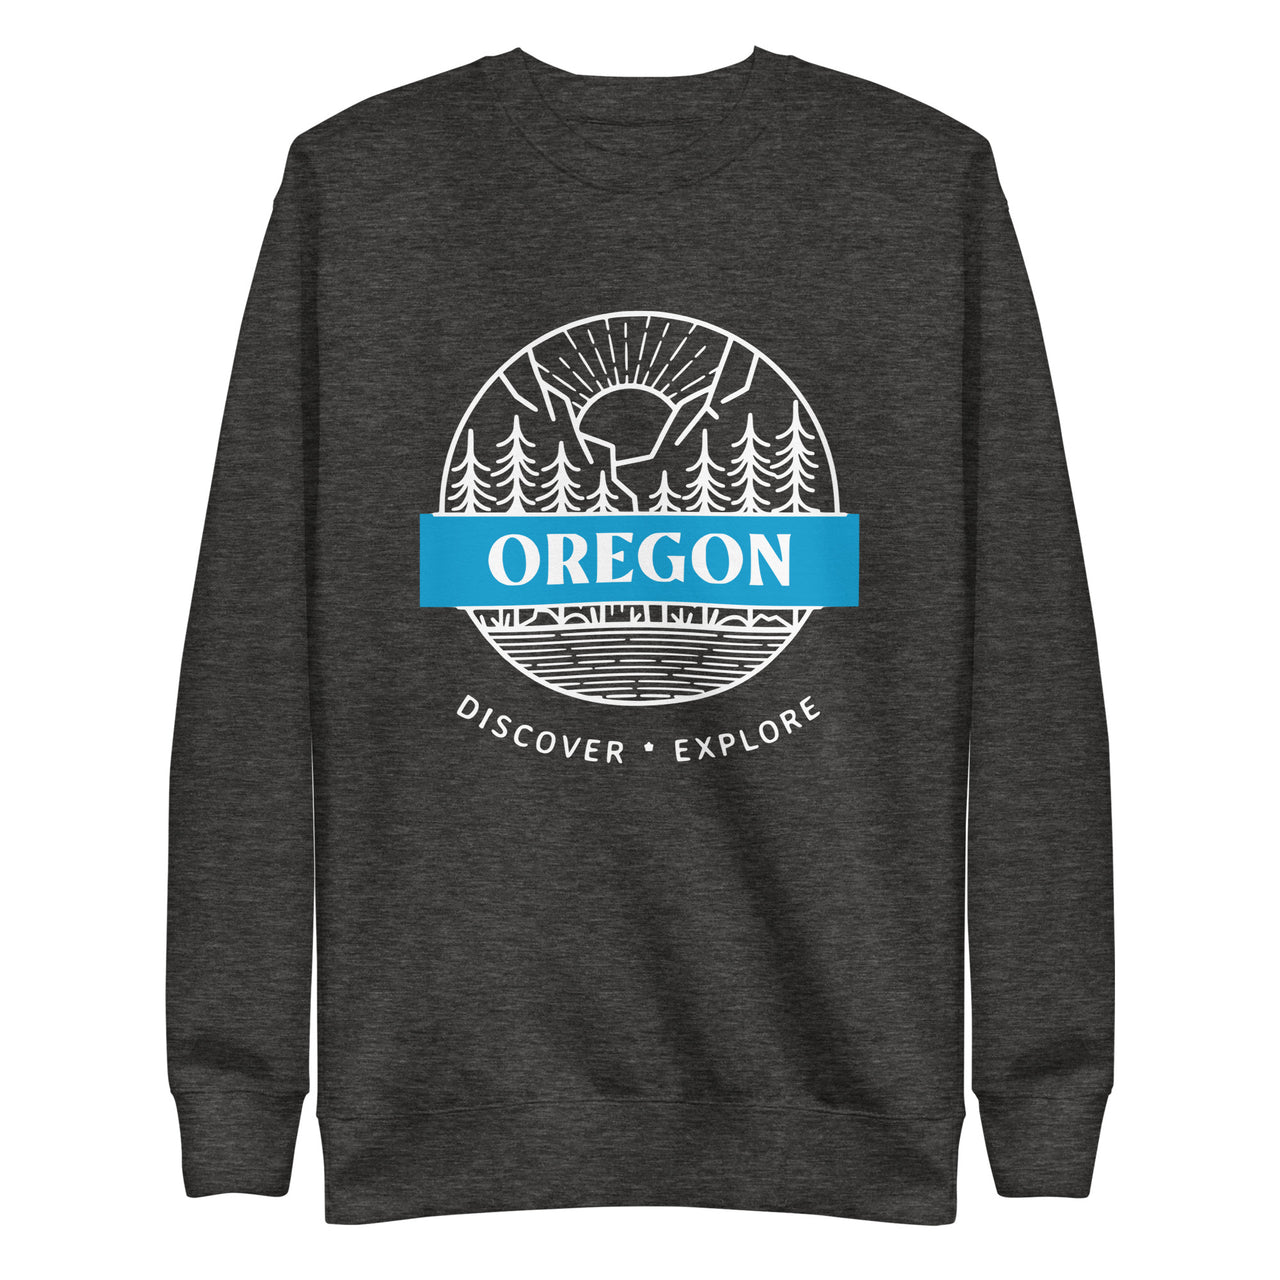 Oregon - Discover - Explore - Unisex Premium Sweatshirt